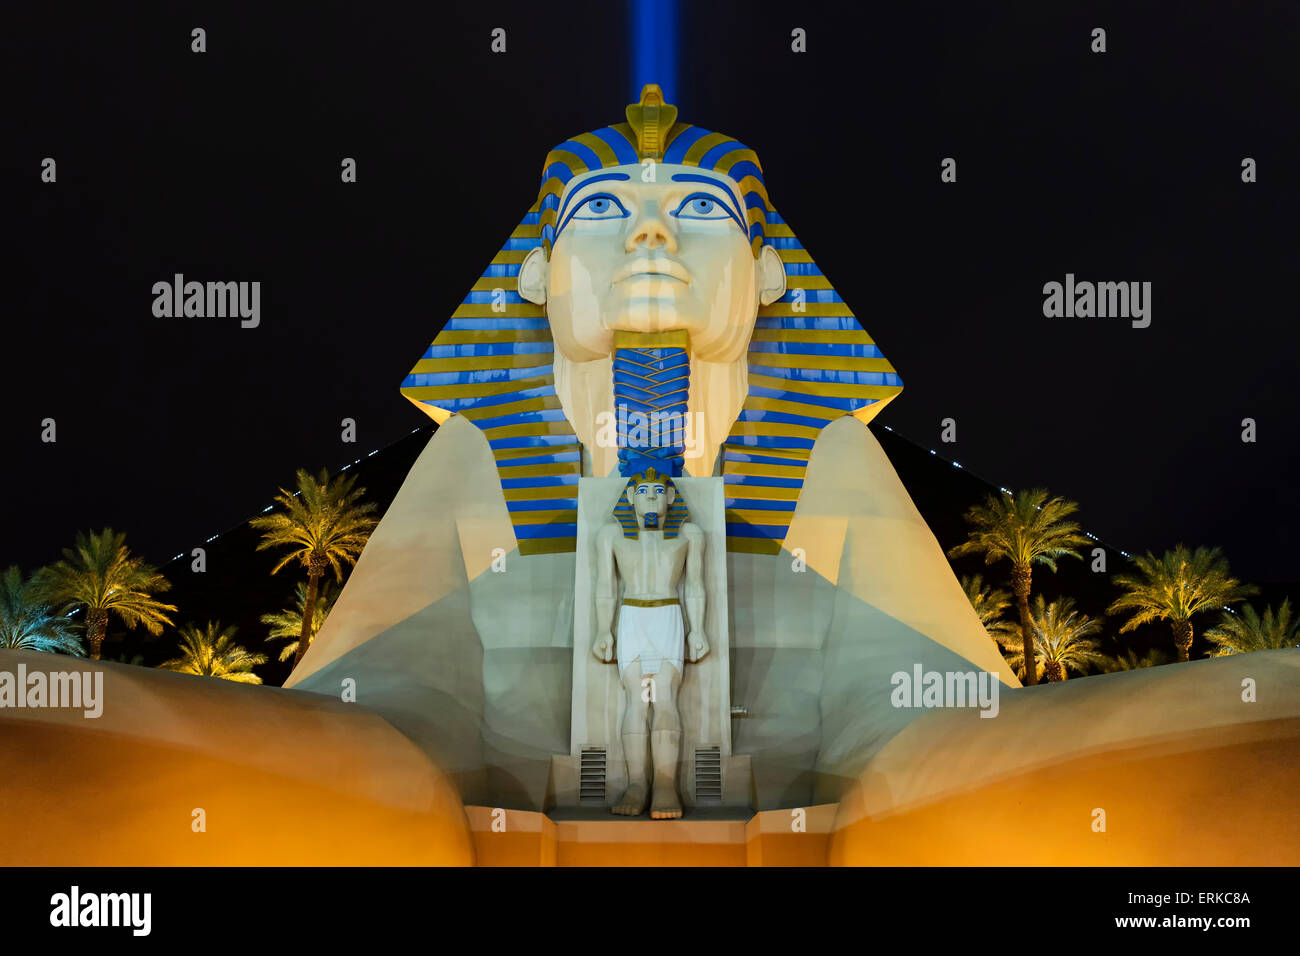 Sphinx pyramid and palms, night scene, Luxor Las Vegas Hotel, Casino, Strip, Las Vegas, Nevada, USA Stock Photo